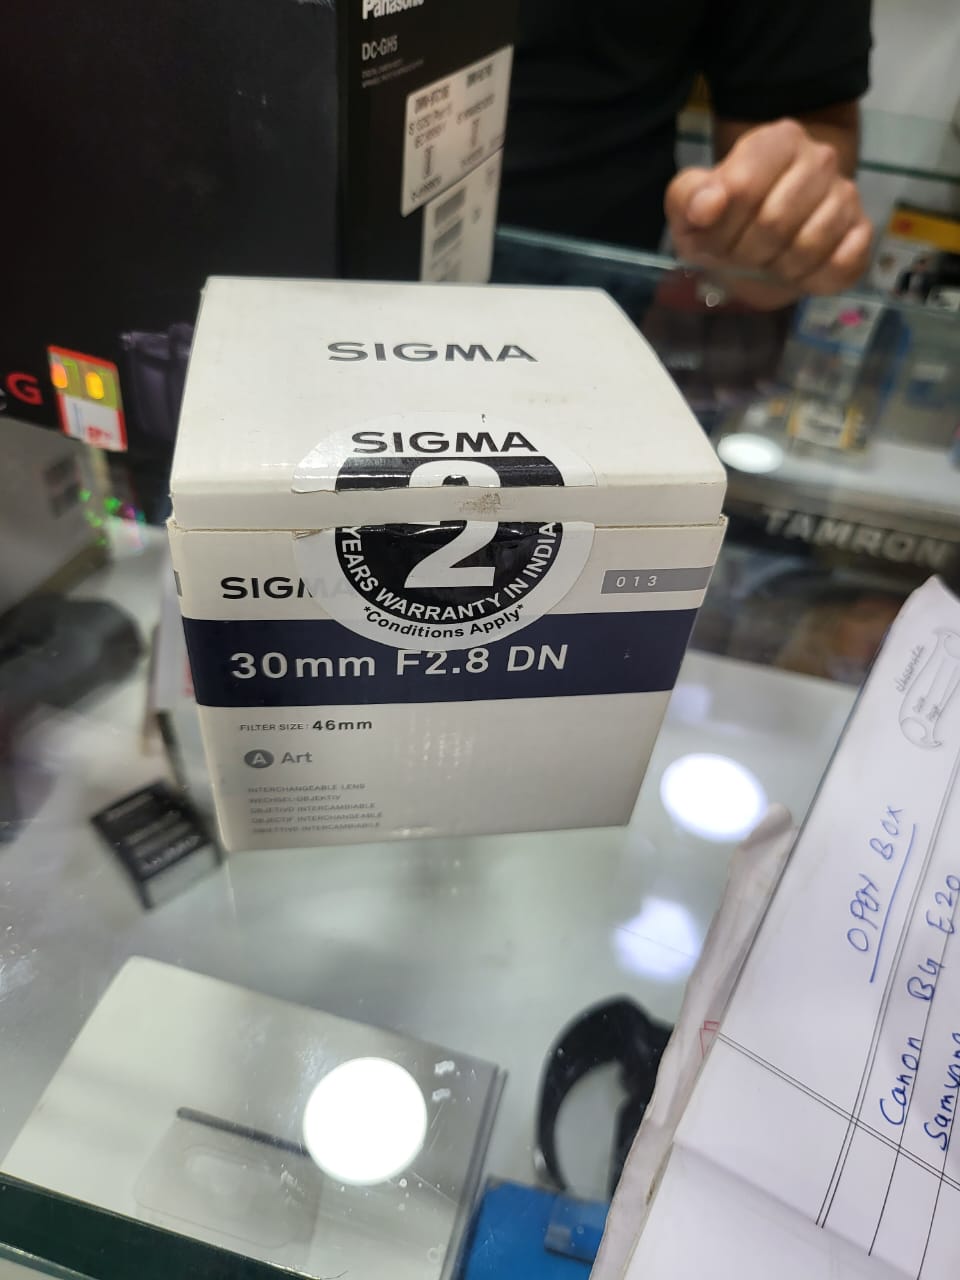 सोनी ई-माउंट कैमरा के लिए ओपन बॉक्स सिग्मा 30mm F2.8 DN लेंस (काला)